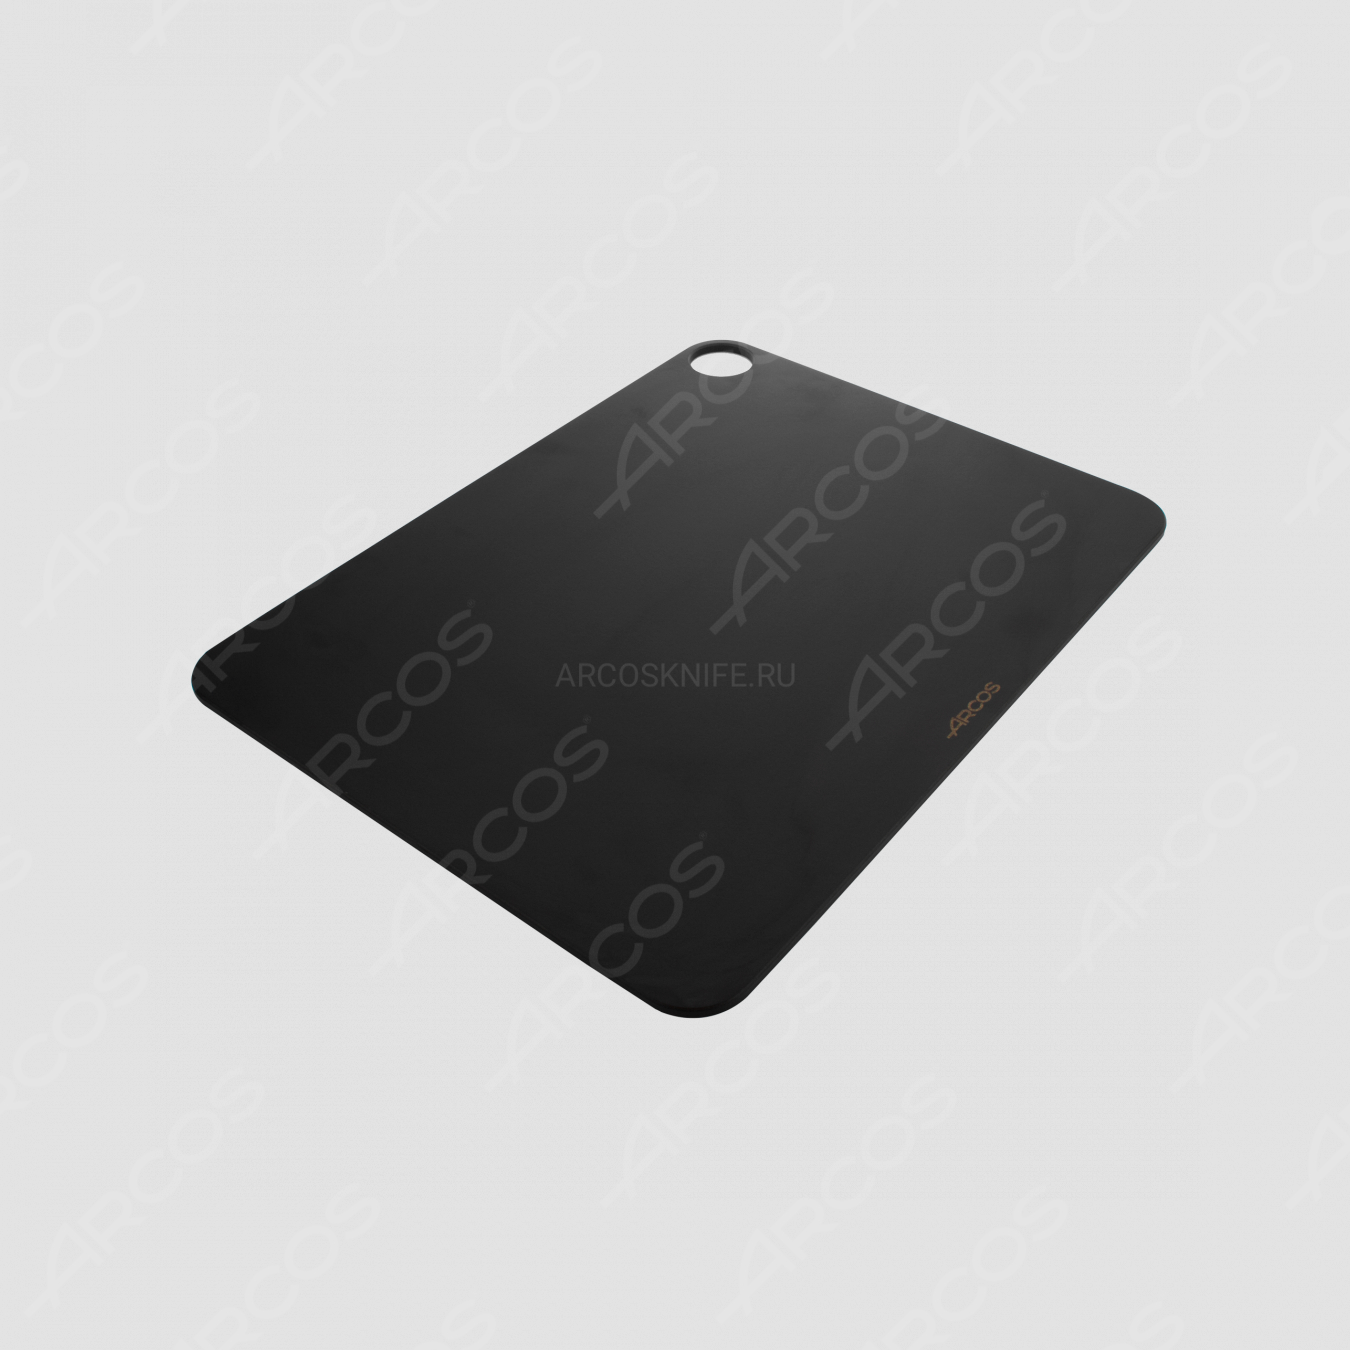 Доска разделочная с желобом, цвет черный, 42,7х32,7 см, серия Accessories, ARCOS, Испания